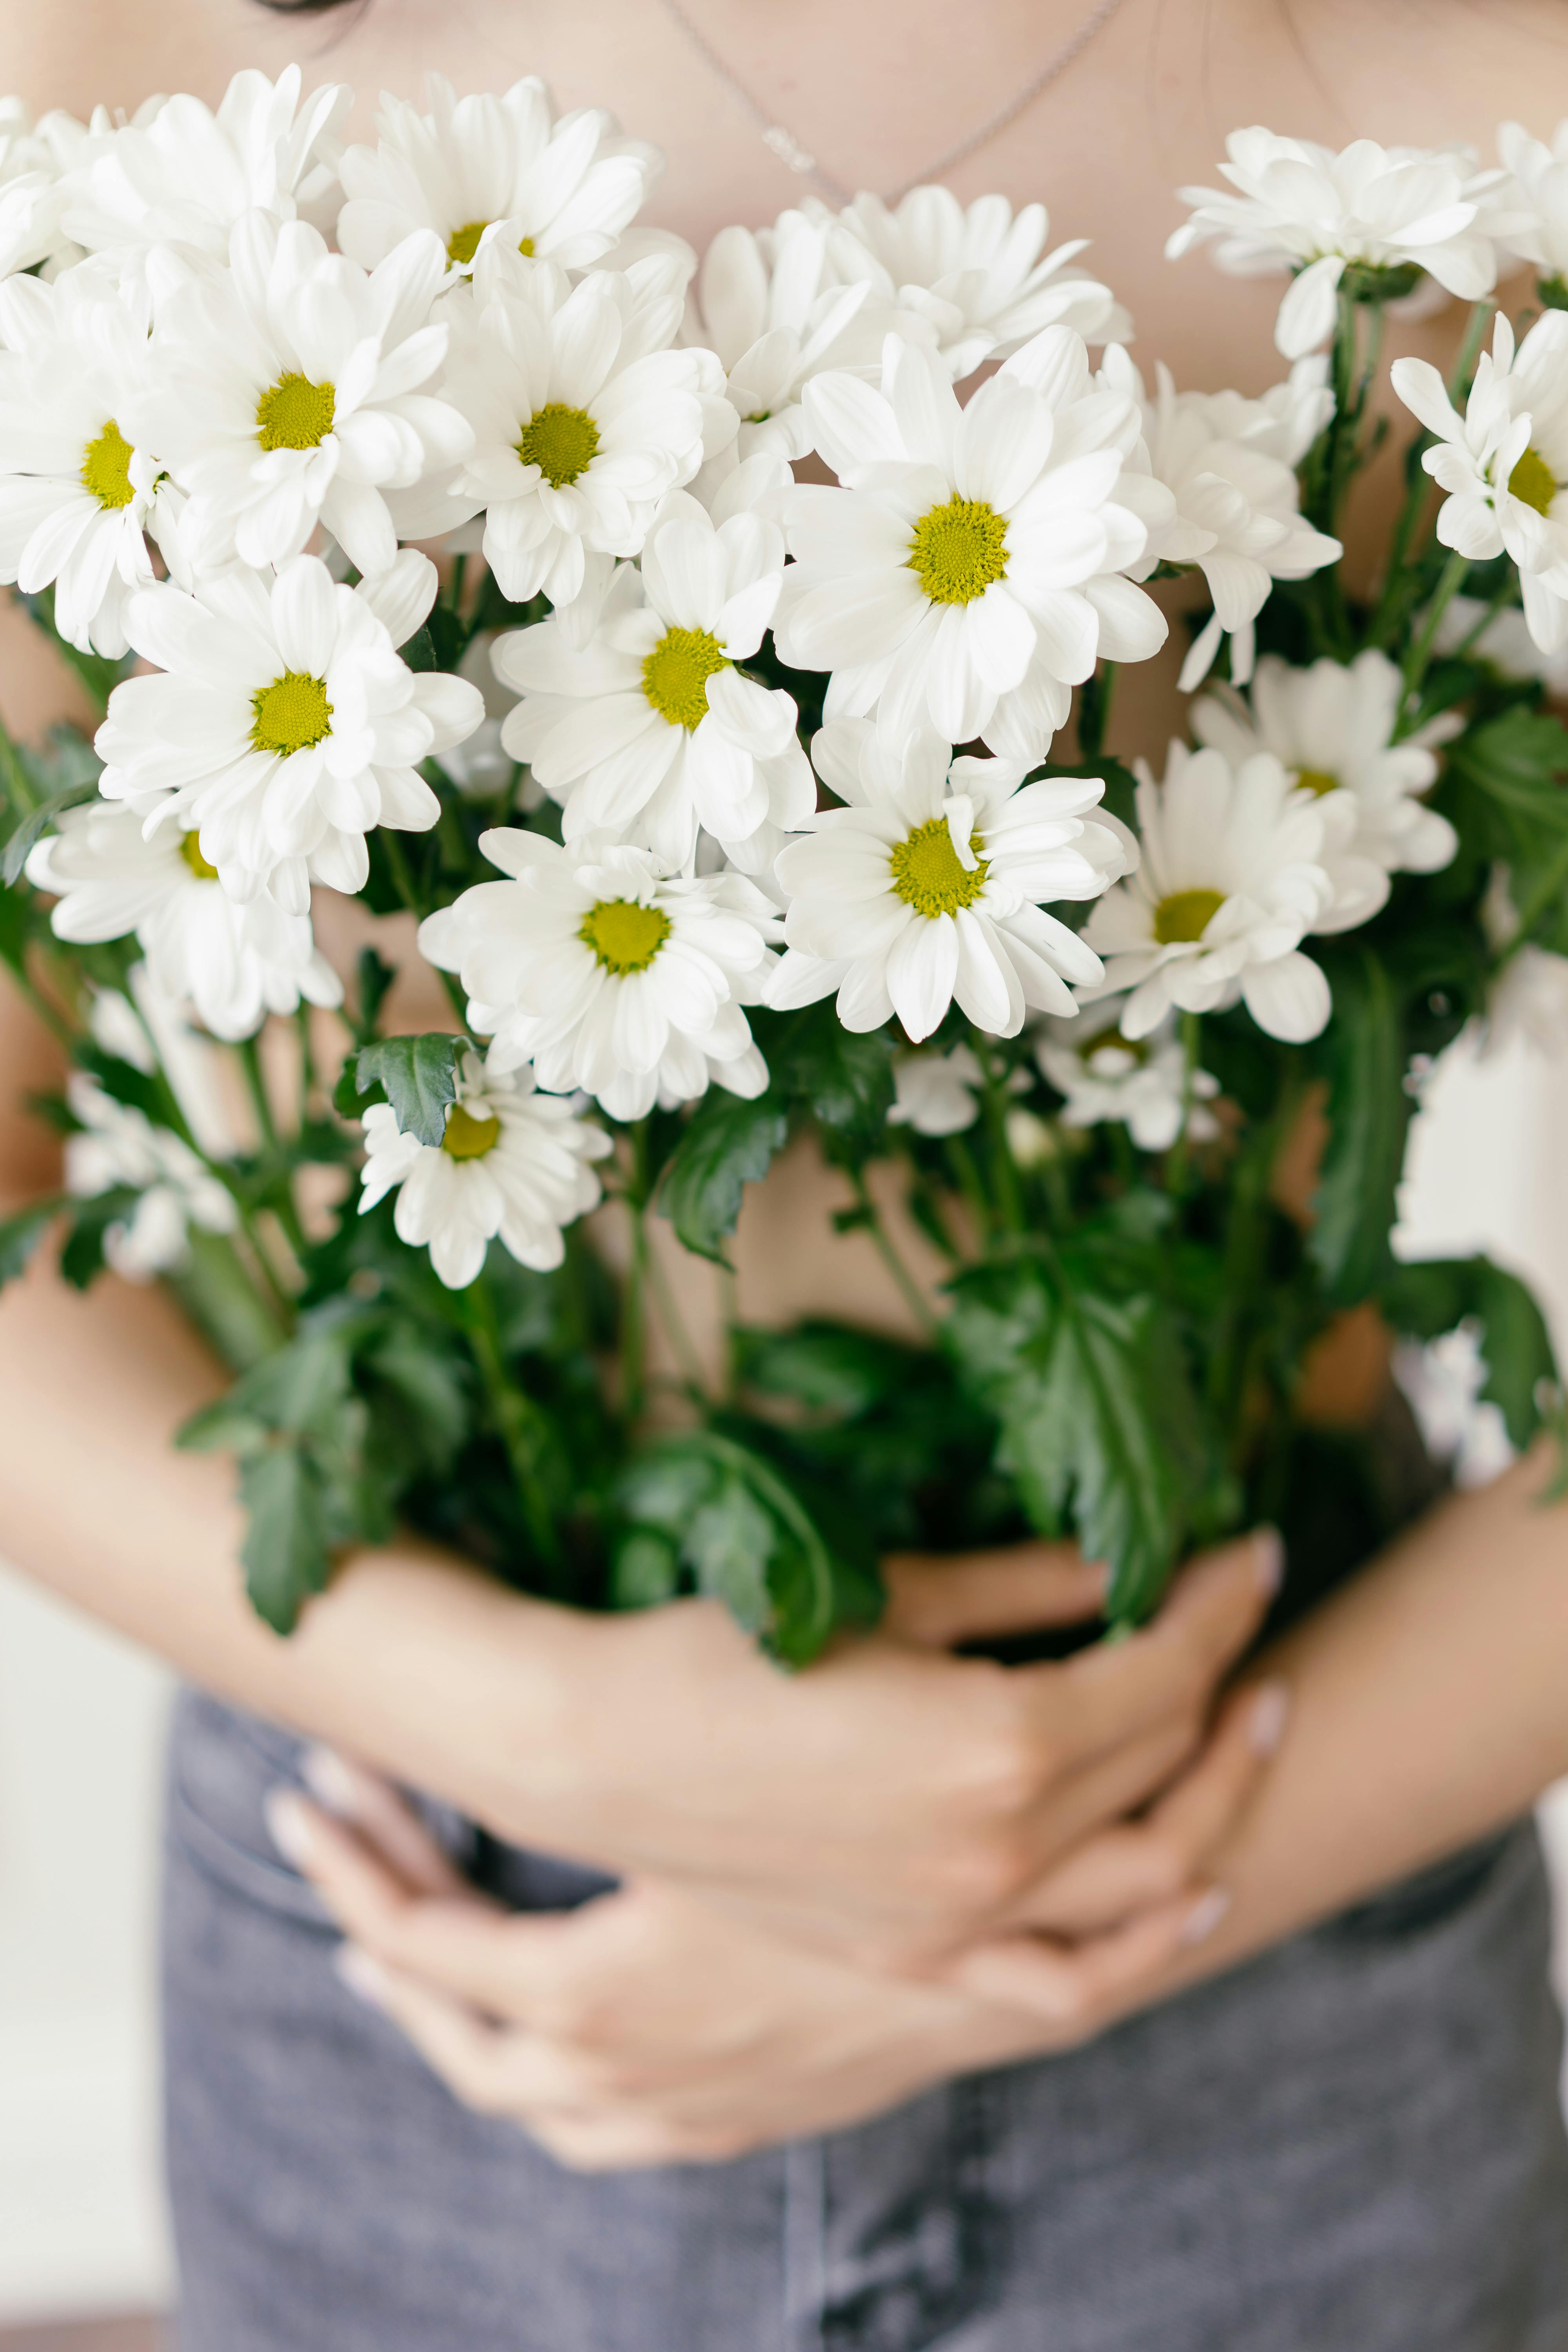 Sự đơn giản và tinh tế của hoa màu trắng luôn khiến cho ta cảm thấy thanh tịnh và yên bình. Hãy ngắm nhìn và tận hưởng vẻ đẹp tuyệt vời của những bông hoa trắng trong từng khu vườn, trên từng cành cây.